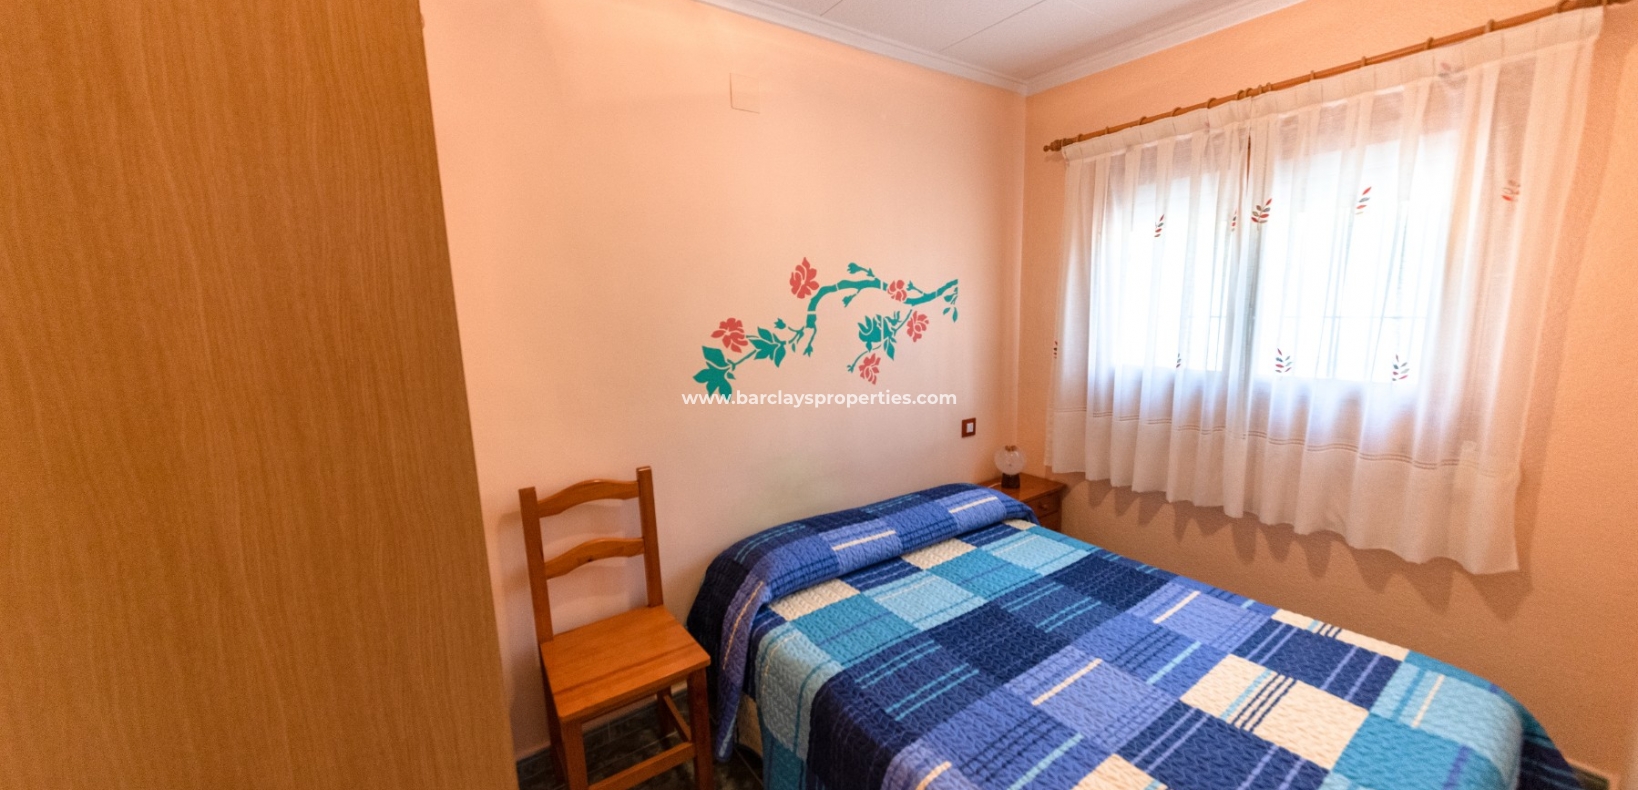 Bedroom - Detached property for sale in La Marina, Alicante